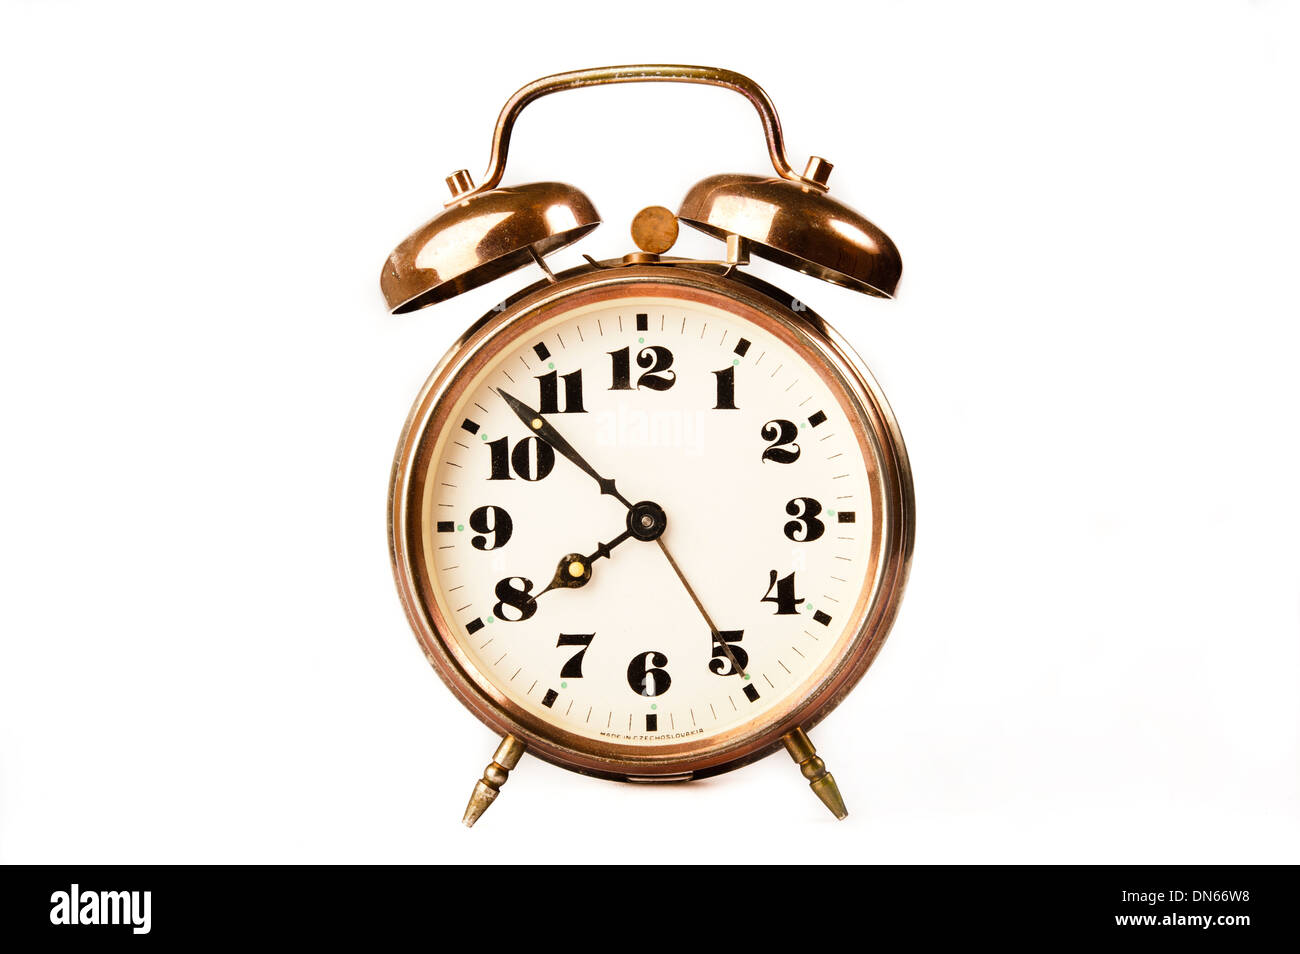 antique alarm clock Stock Photo